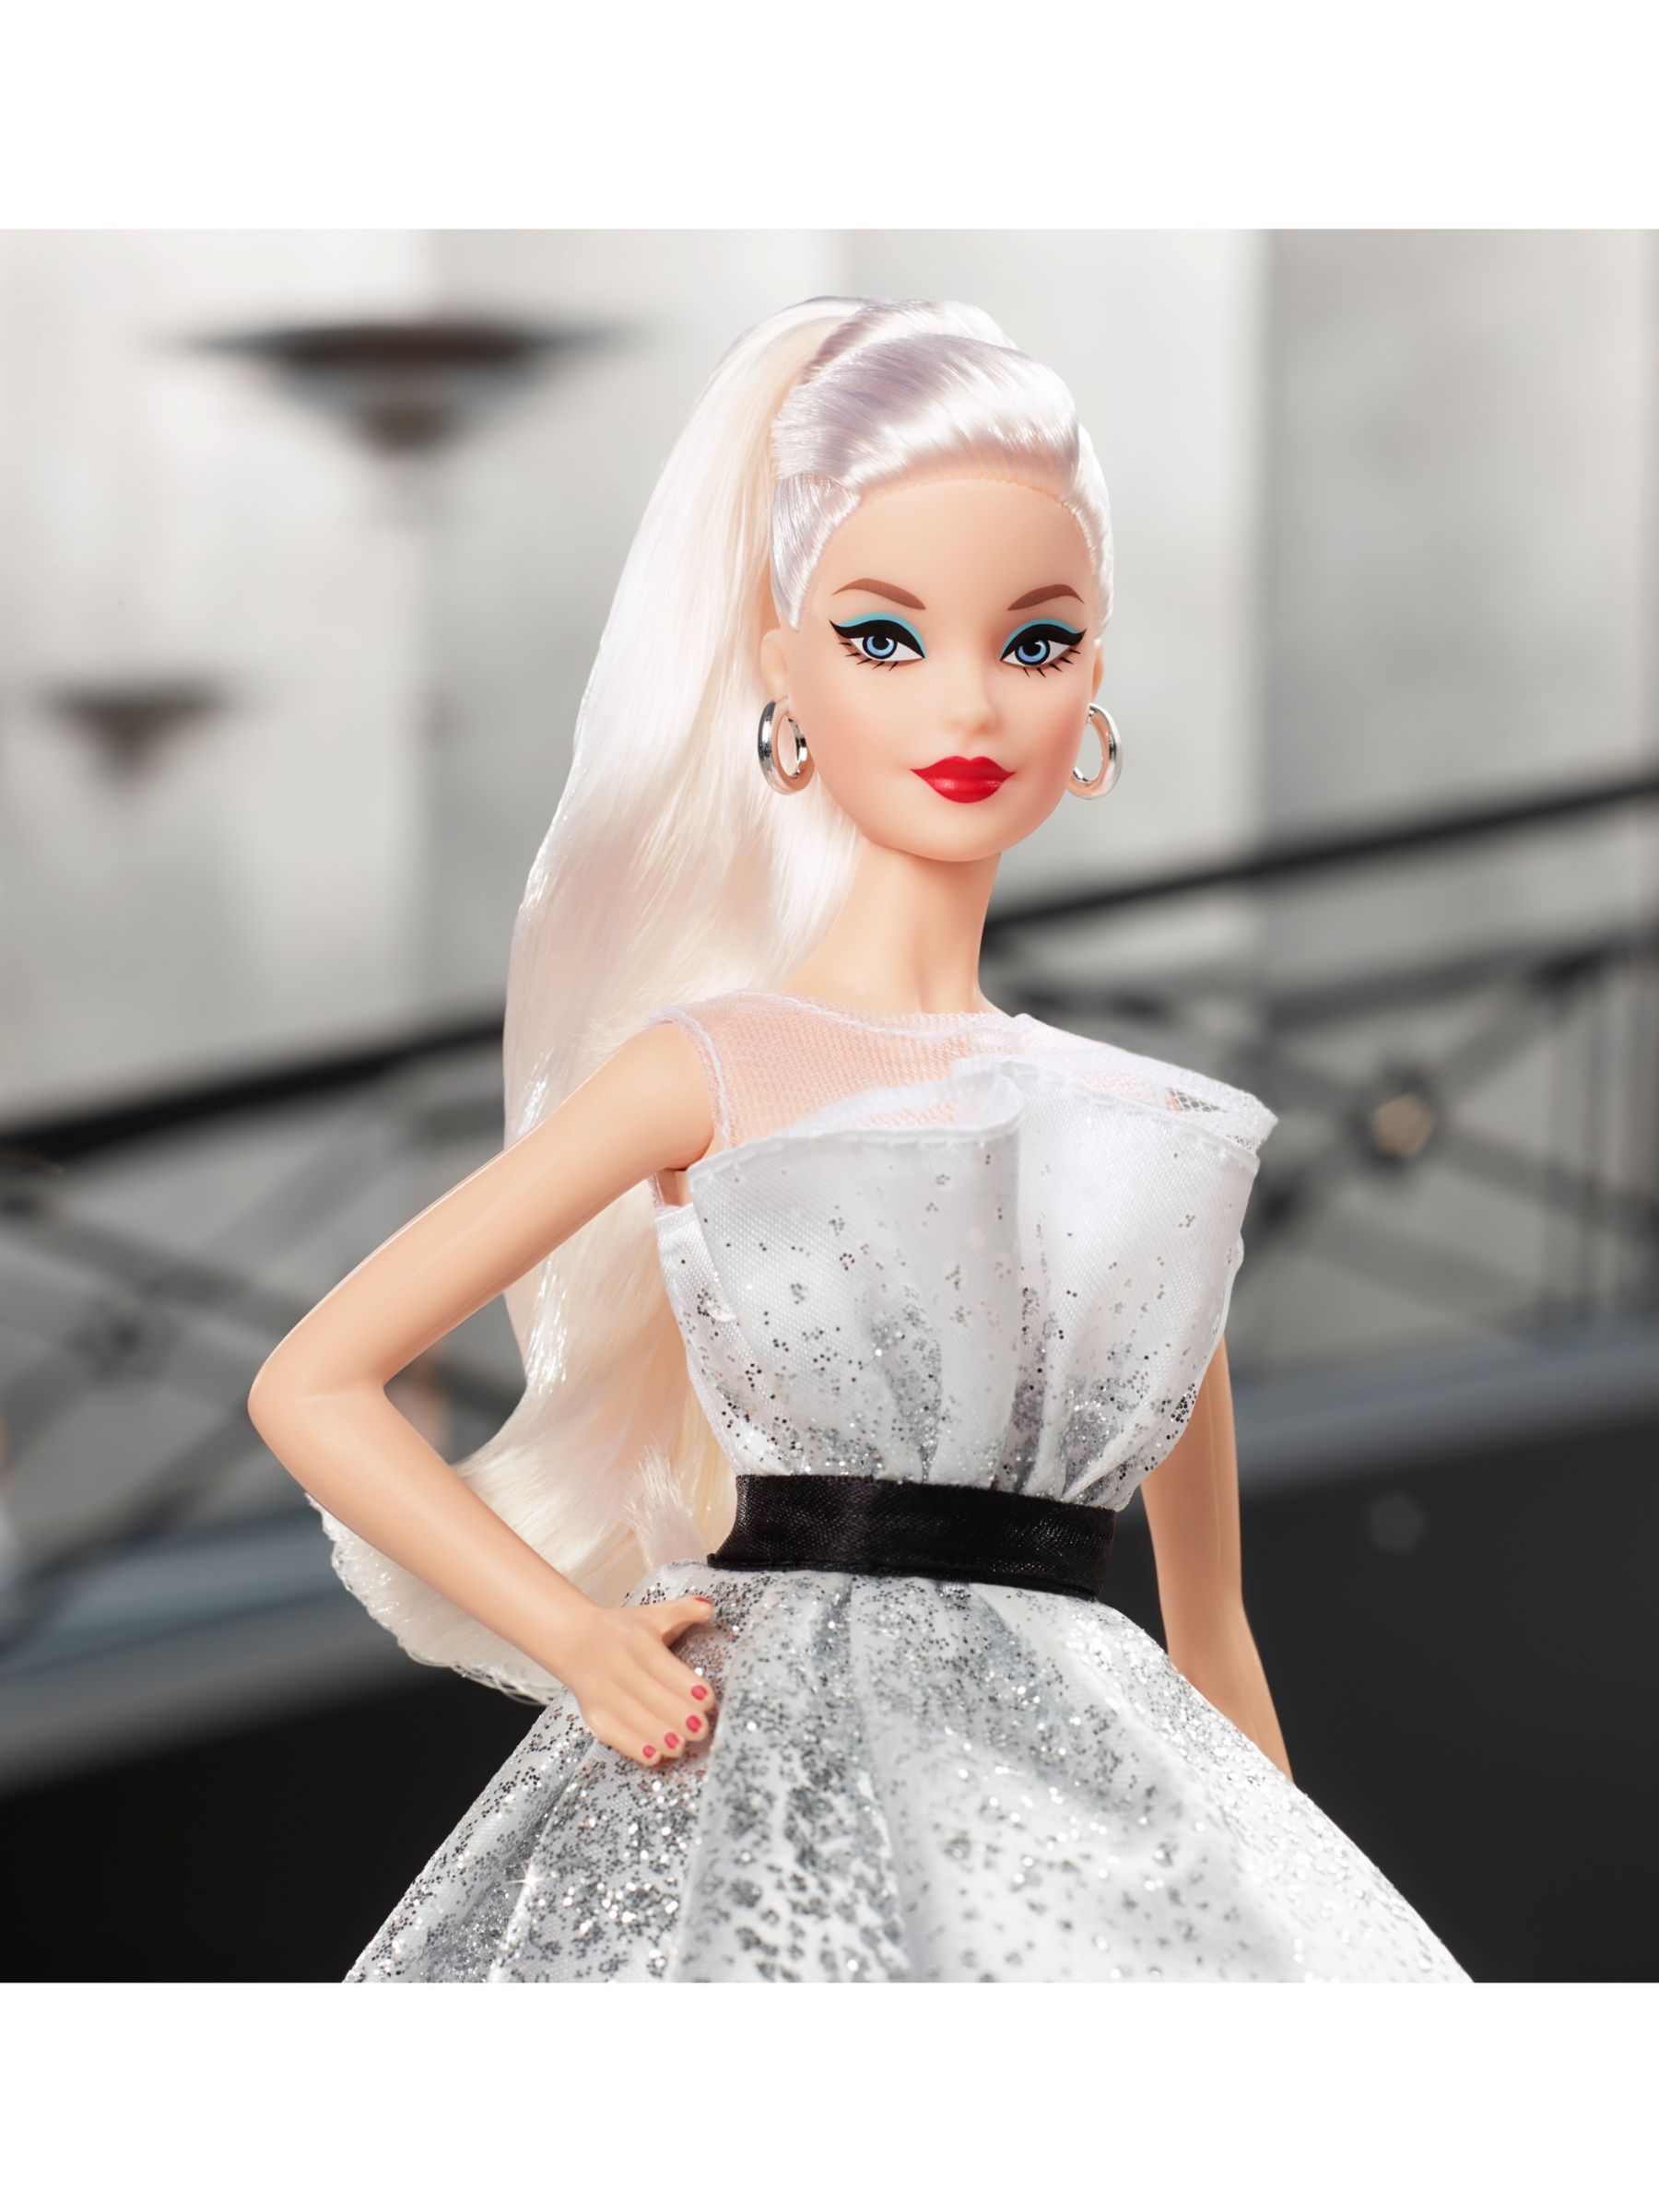 barbie 60 year anniversary